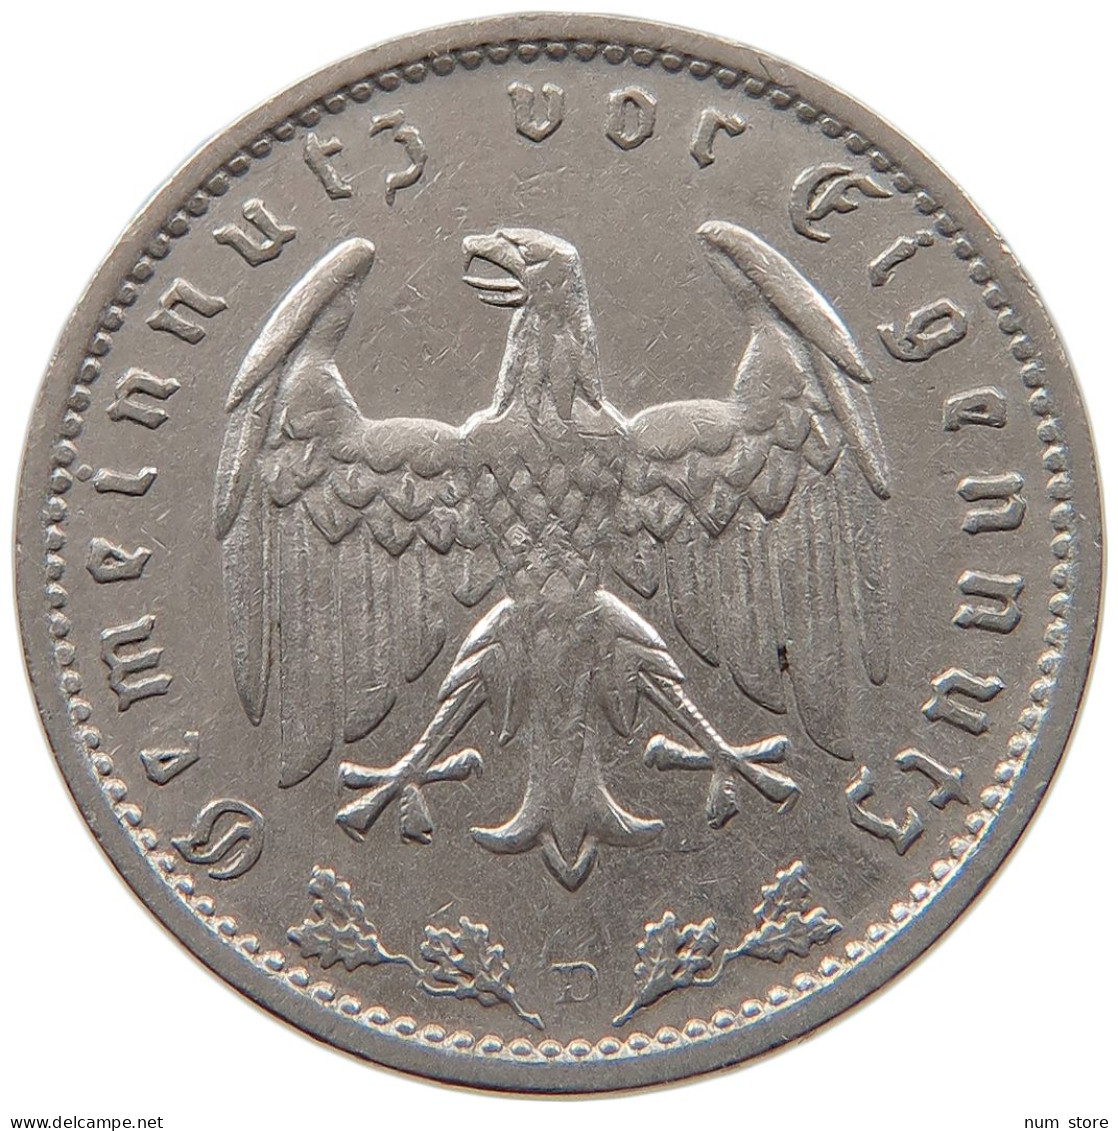 DRITTES REICH MARK 1934 D  #MA 099319 - 1 Reichsmark